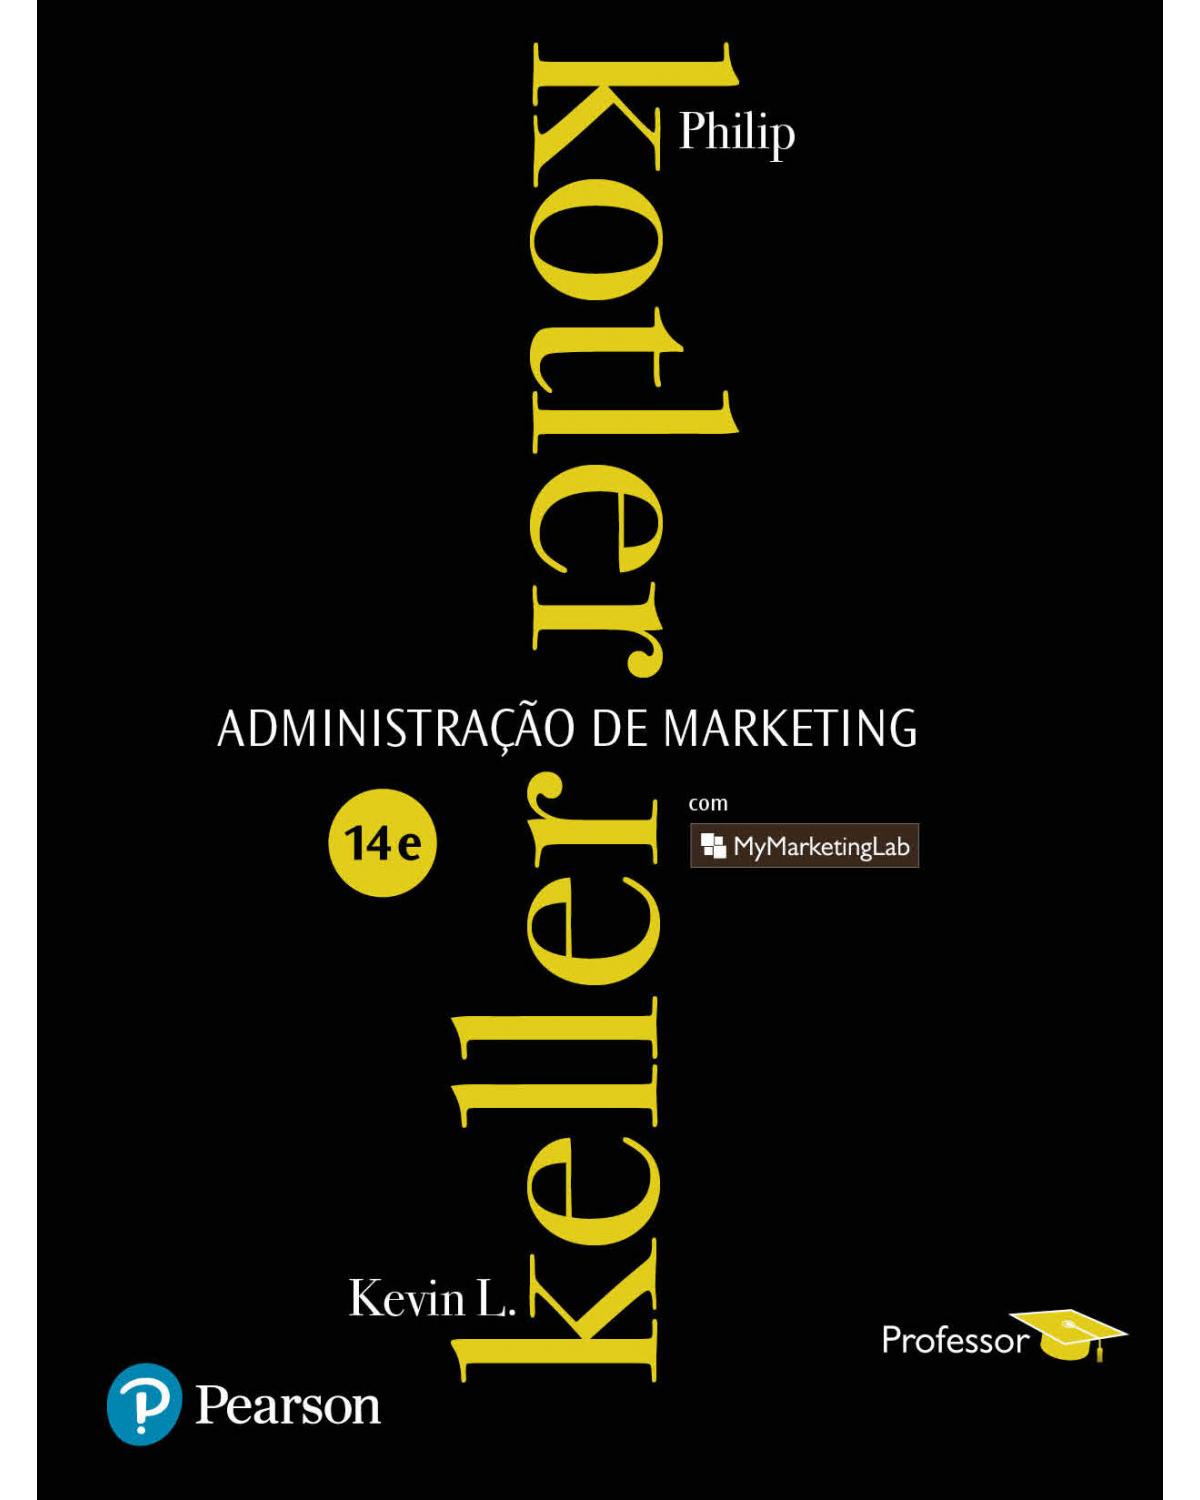 Administração de marketing - Com MyMarketingLab - Professor - 14ª Edição | 2013